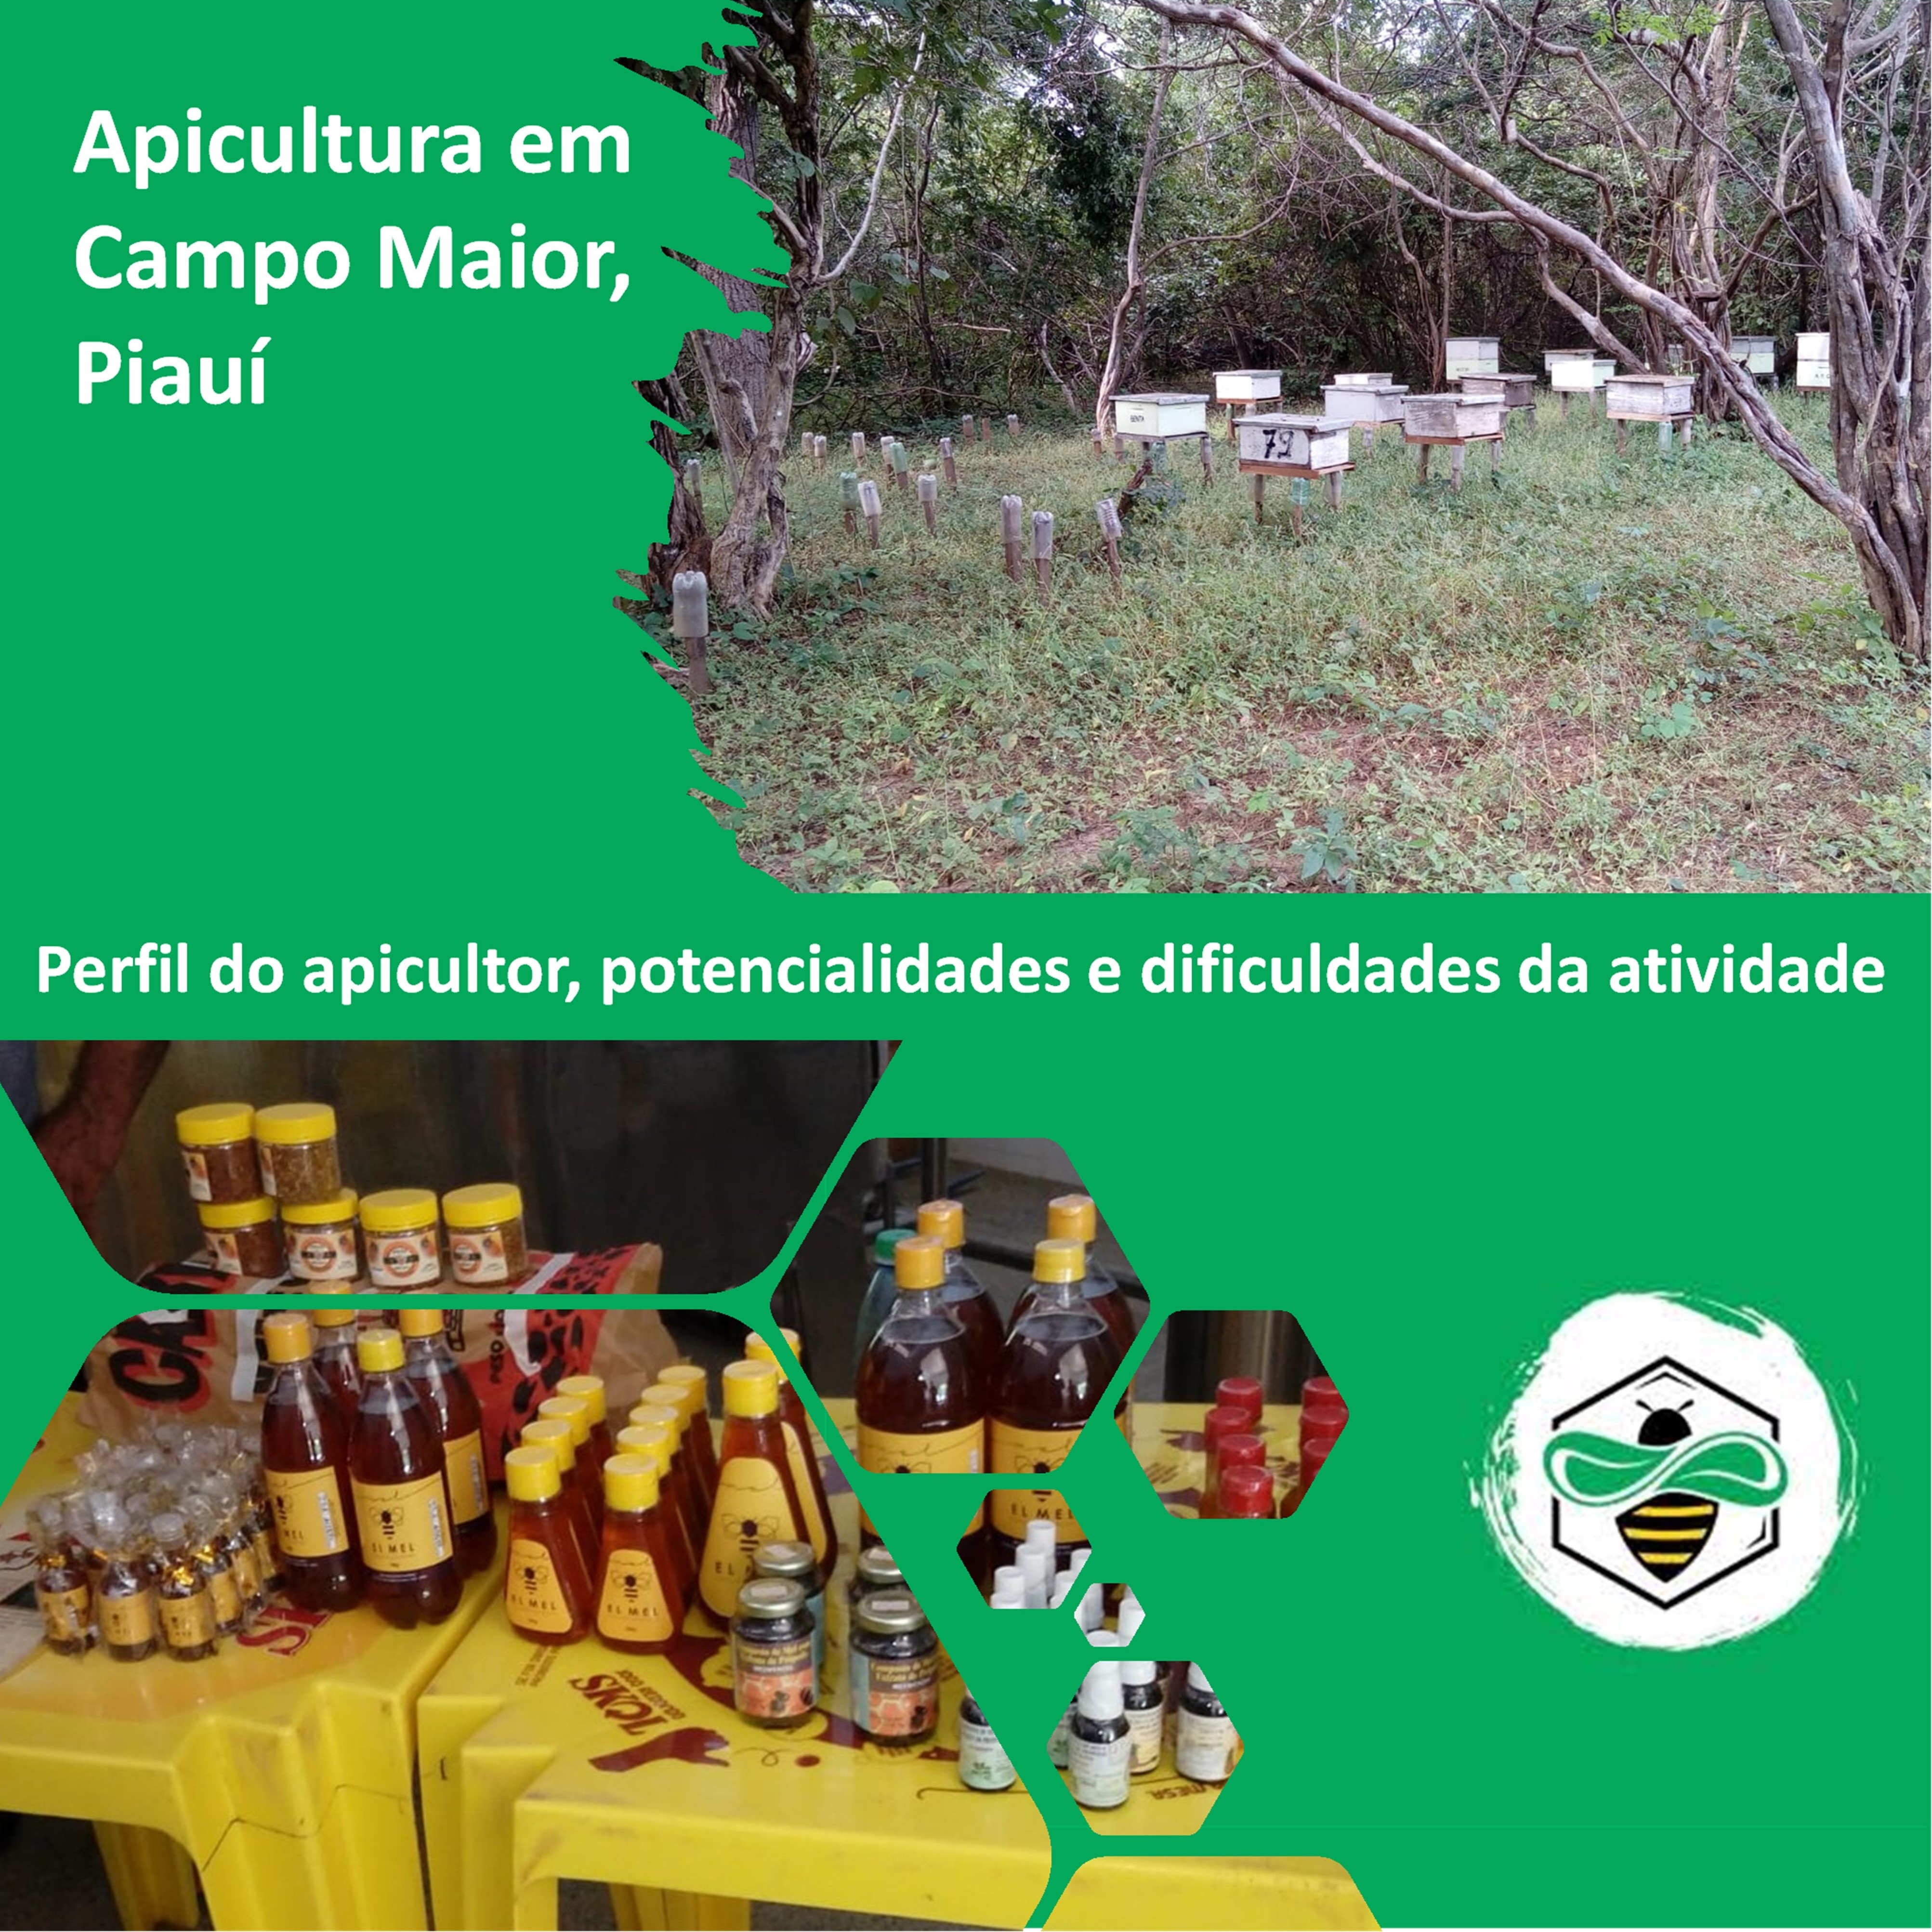 Apicultura em Campo Maior, Piauí